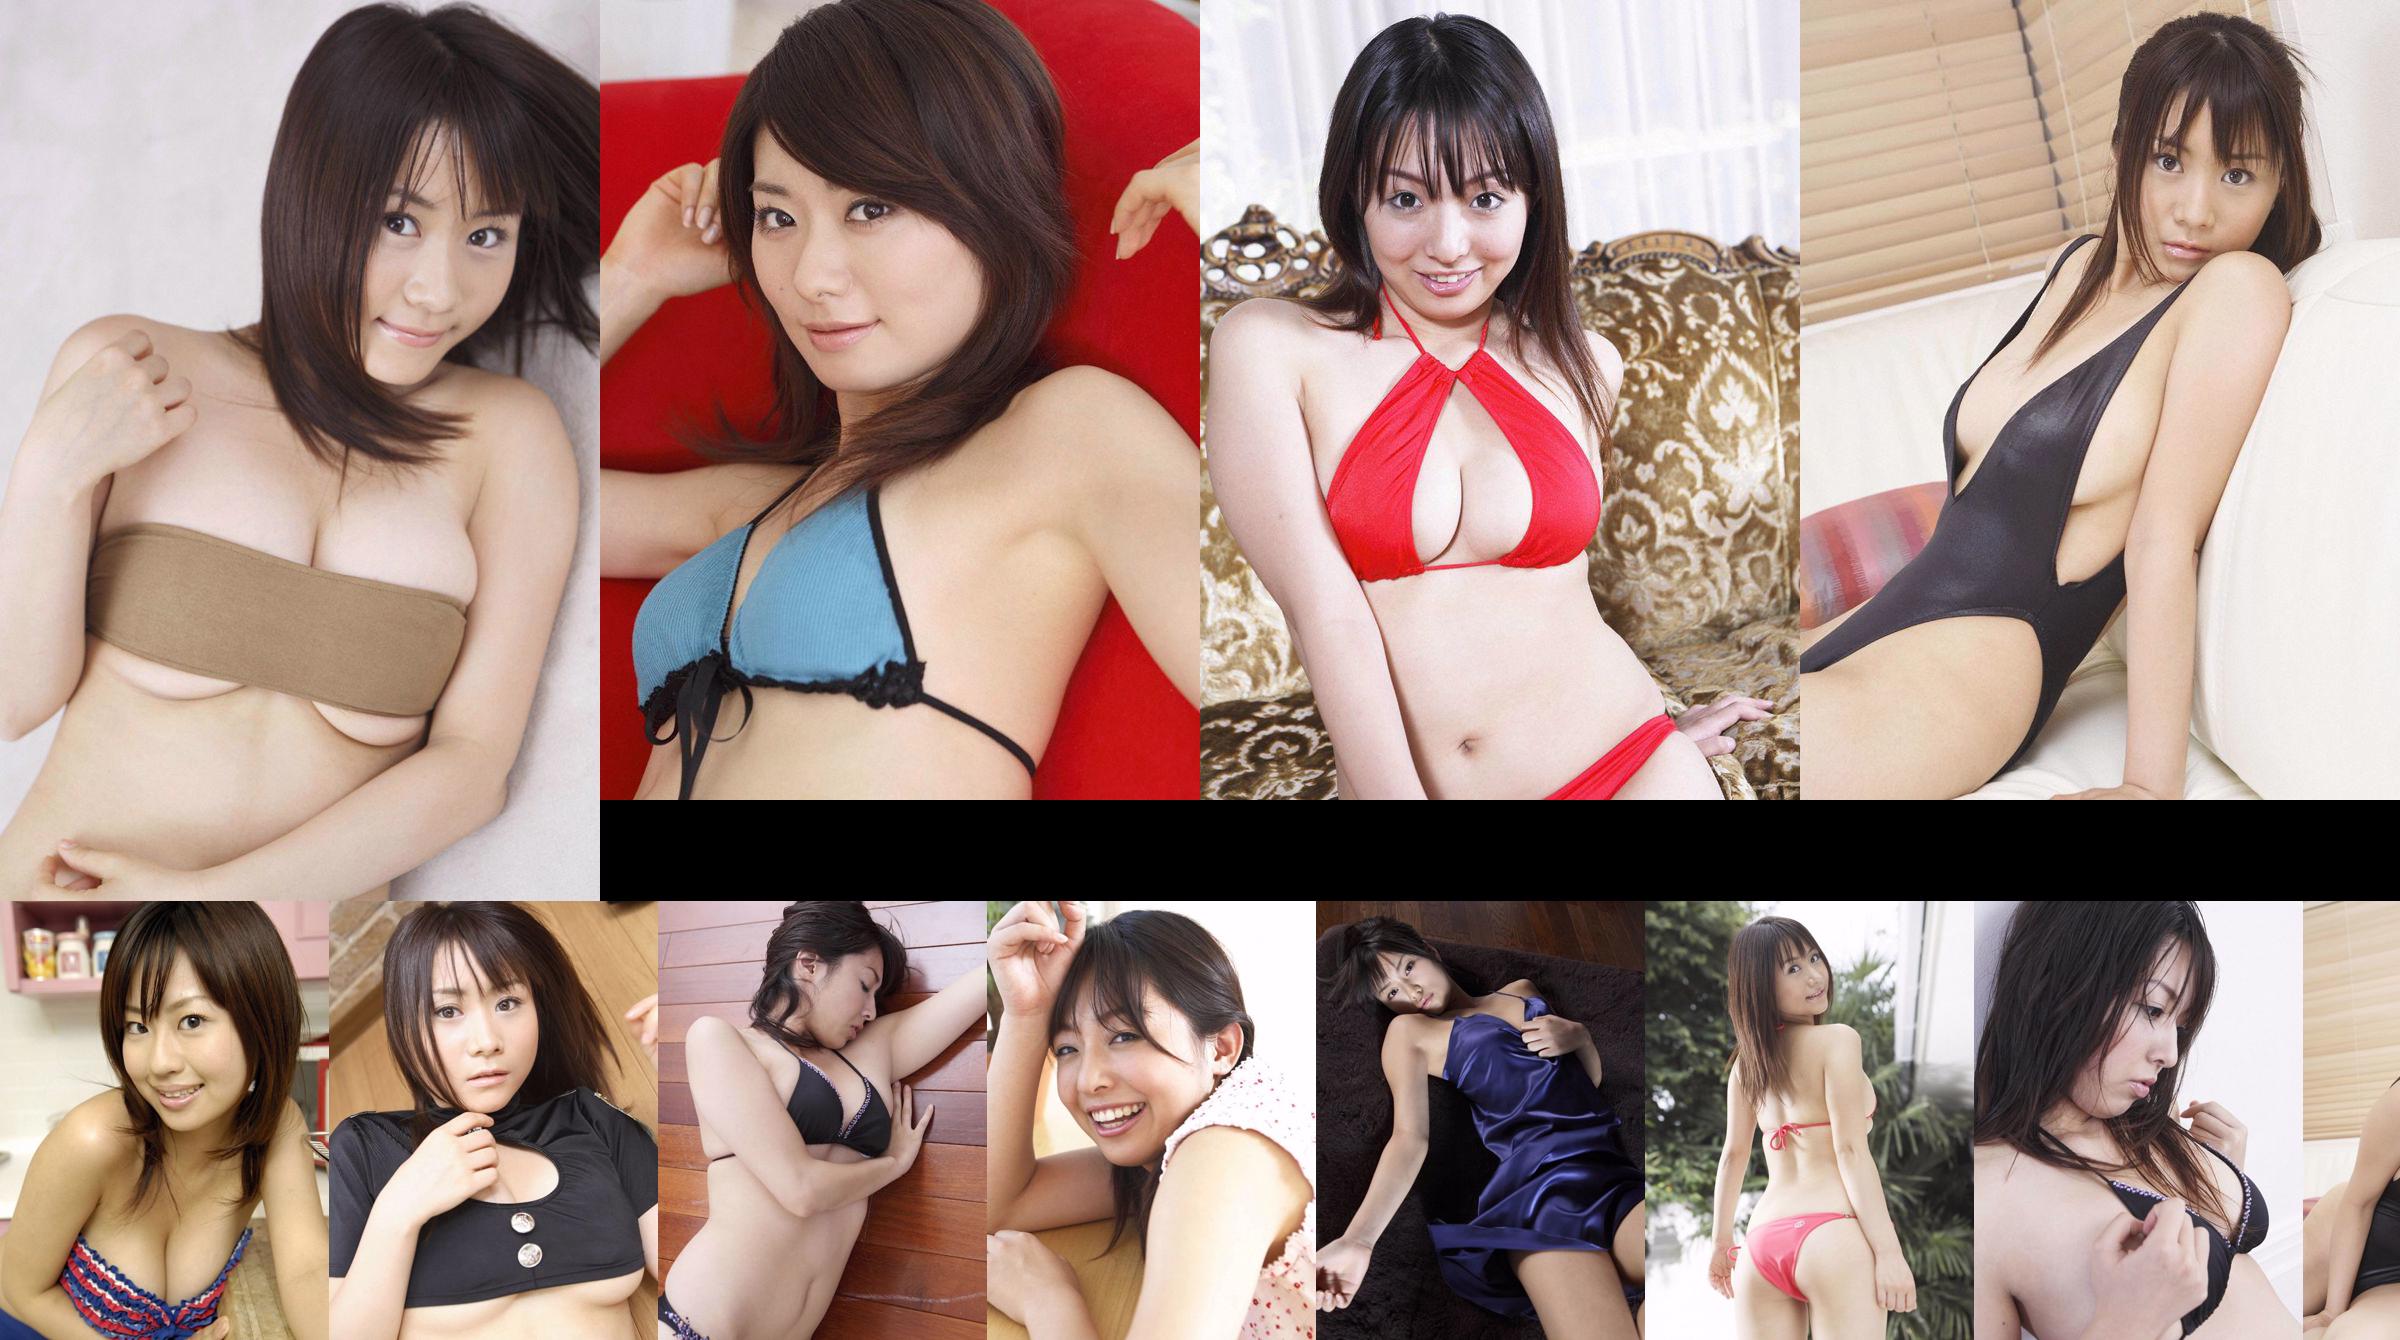 [Wanibooks] No.37 Ai Arakawa, Hitomi Kaikawa, Hitomi Kitamura, Naomi I, Colección de fotos de Chii Matsuda No.fa9ded Página 1